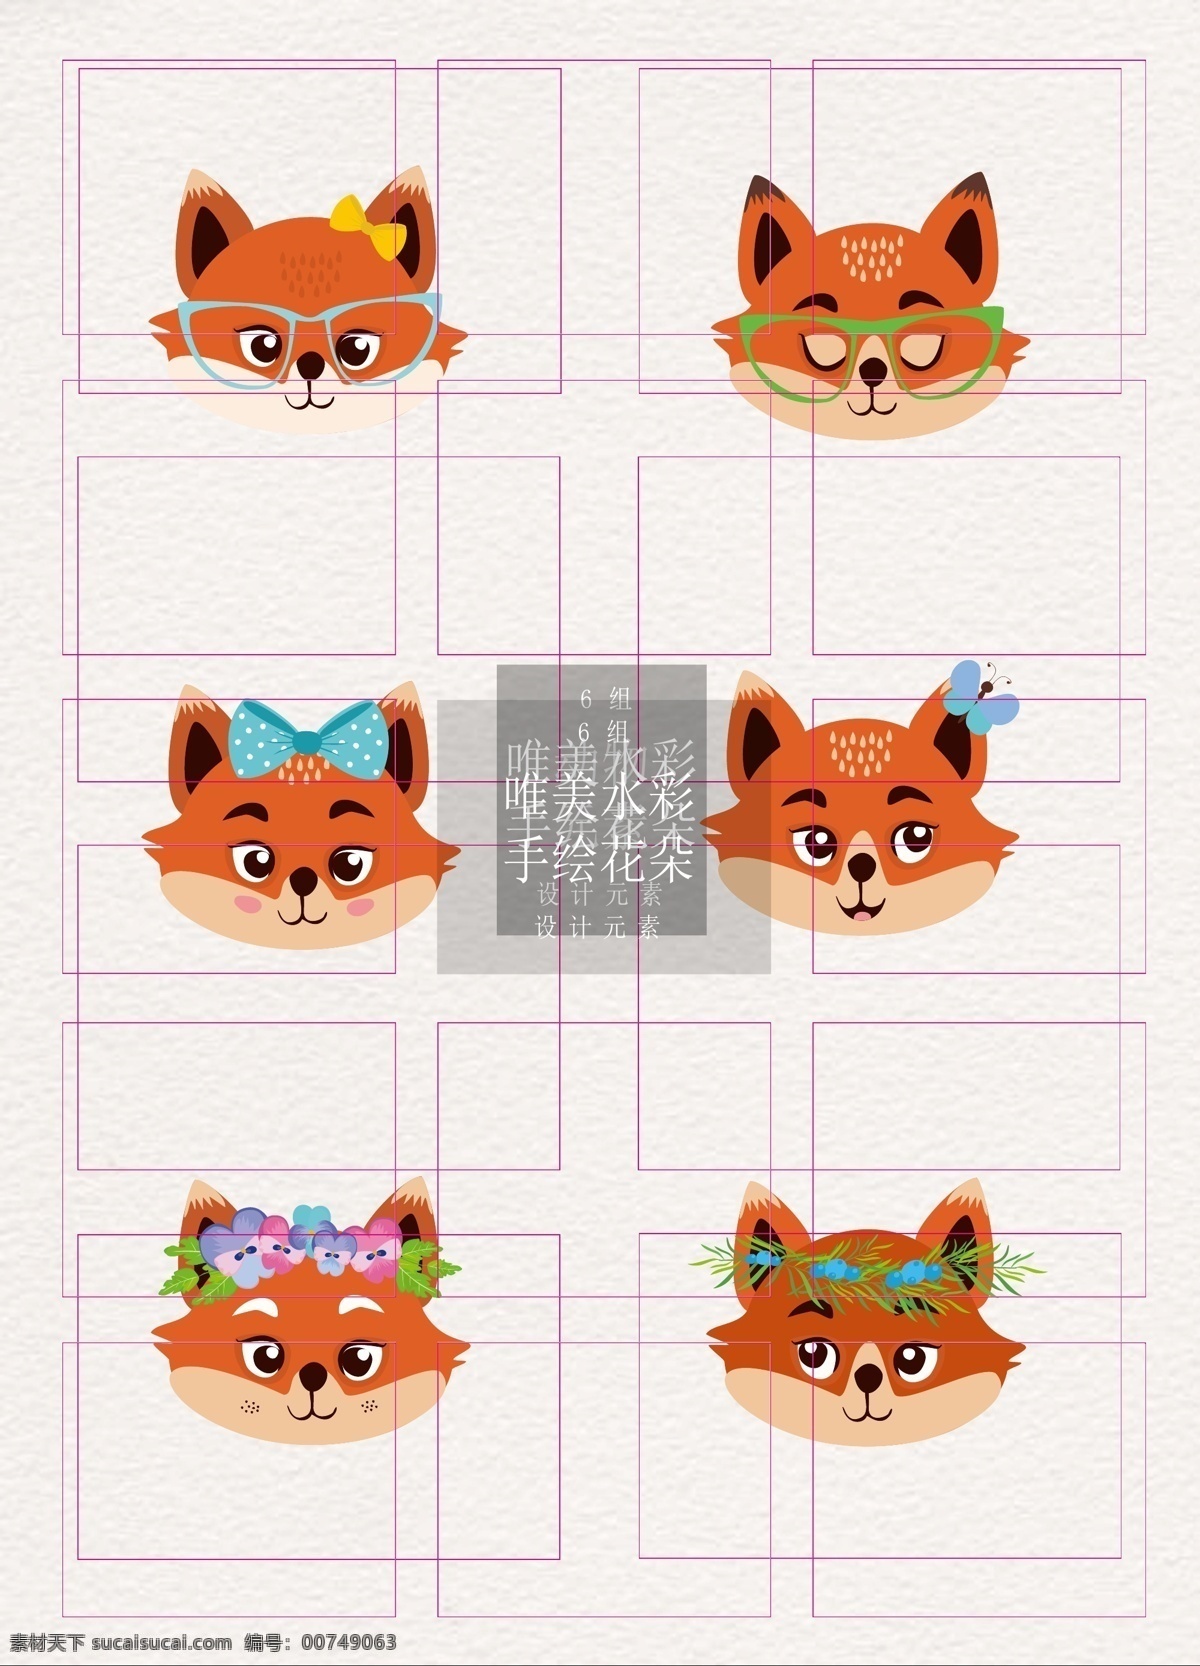 动物 狐狸 设计素材 矢量 卡通 可爱 头像 简单 元素